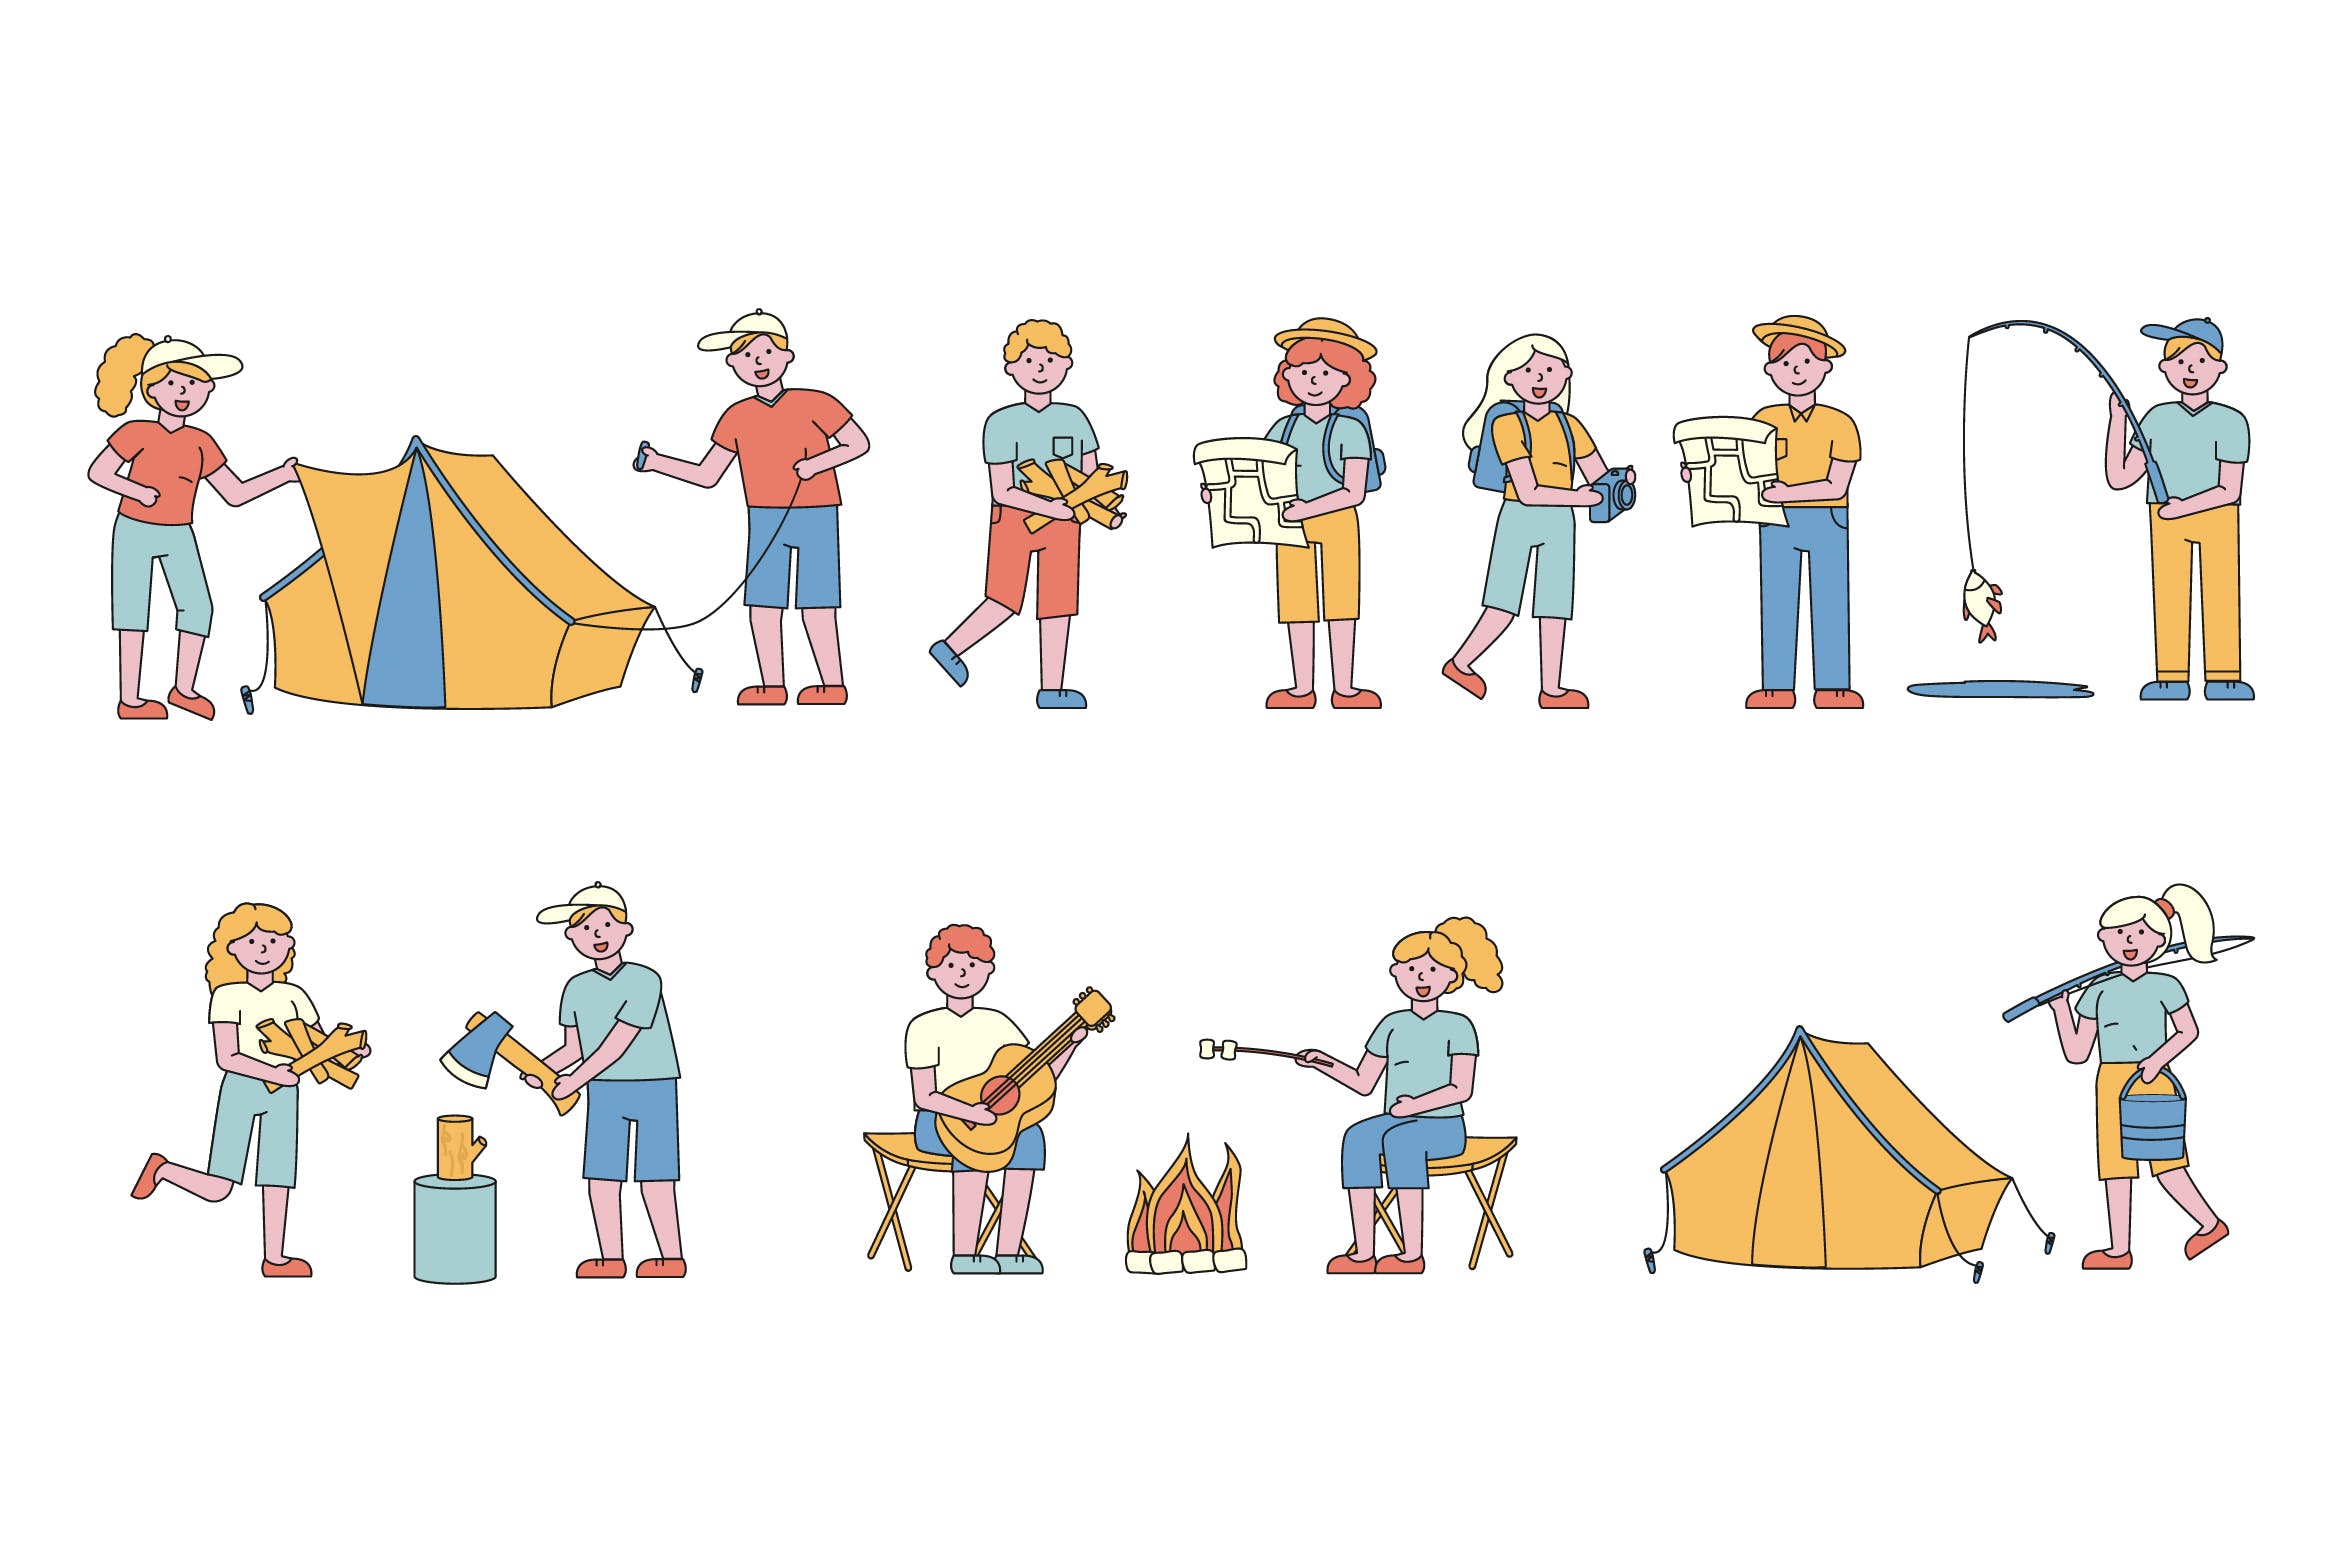 野营户外运动主题人物形象线条艺术矢量插画非凡图库精选素材 Campers Lineart People Character Collection插图